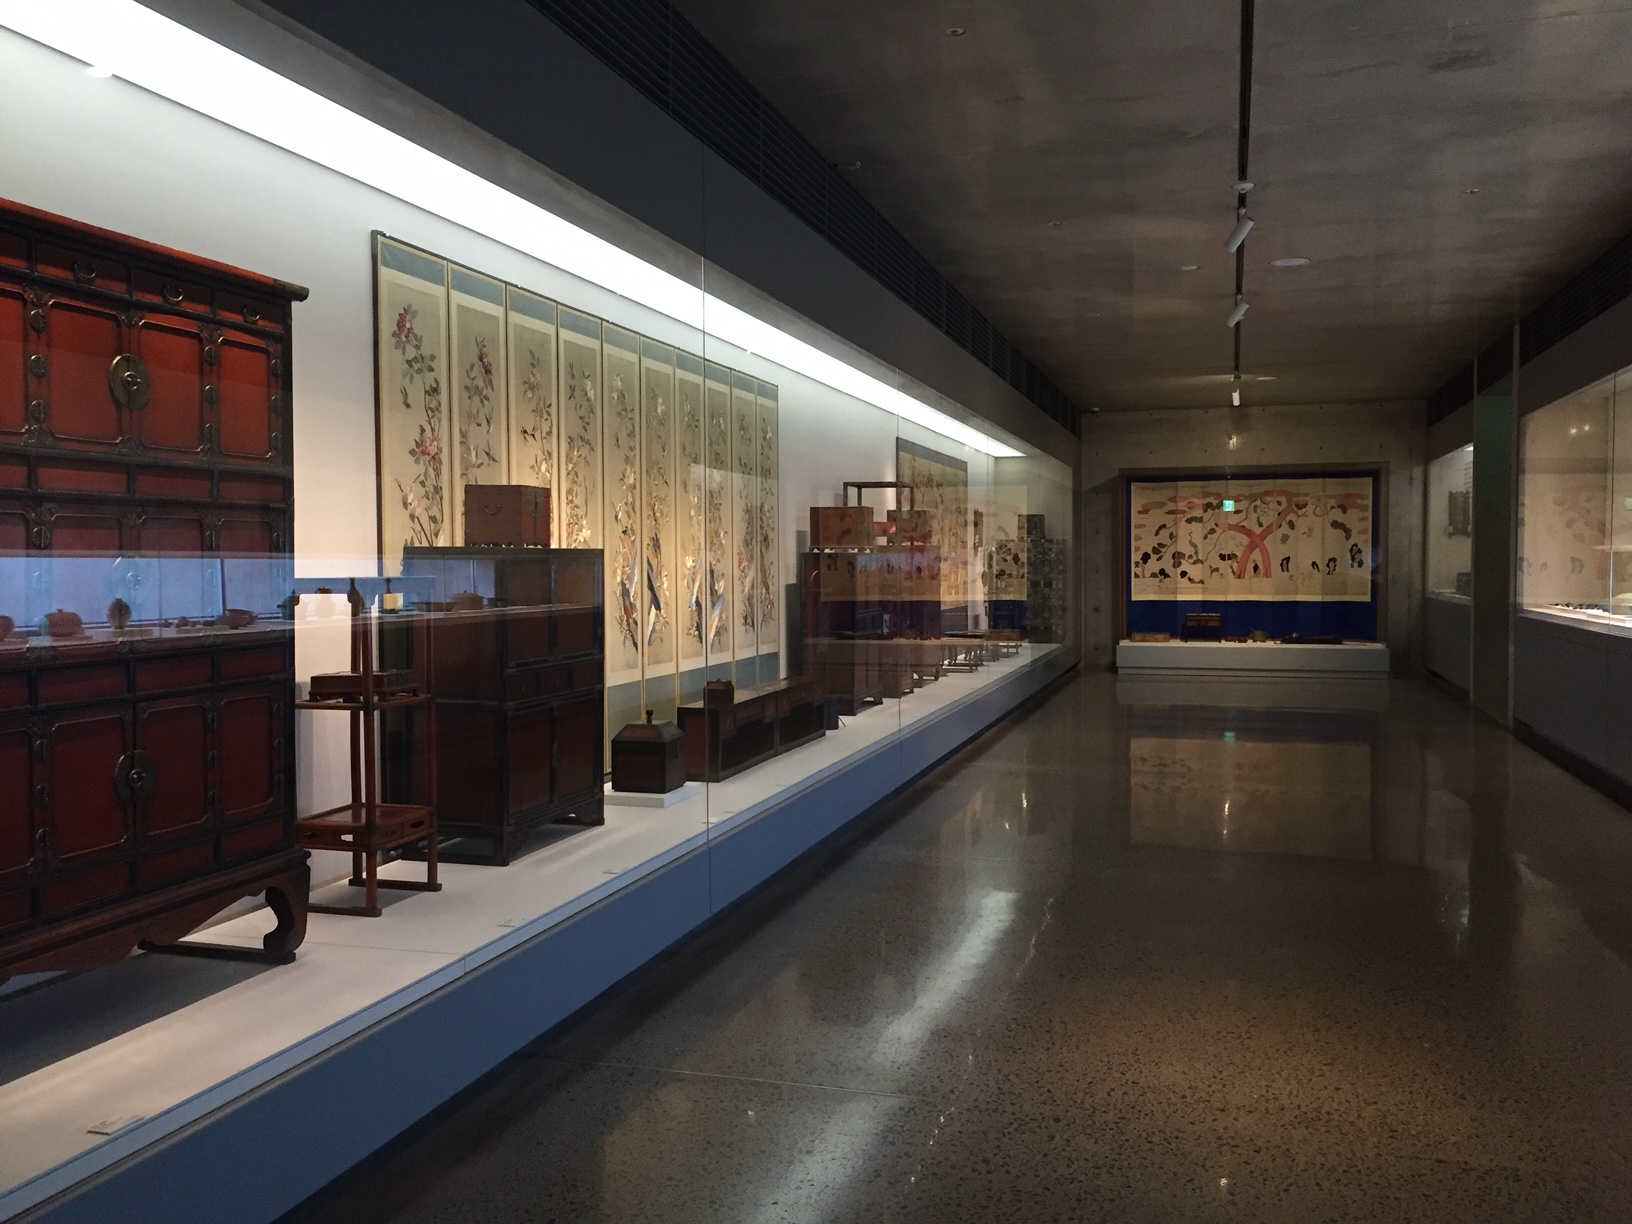 목가구와 병풍 등 전통 한옥 공간에서 사용됐던 조선시대의 공예품이 고르게 전시된 1관.